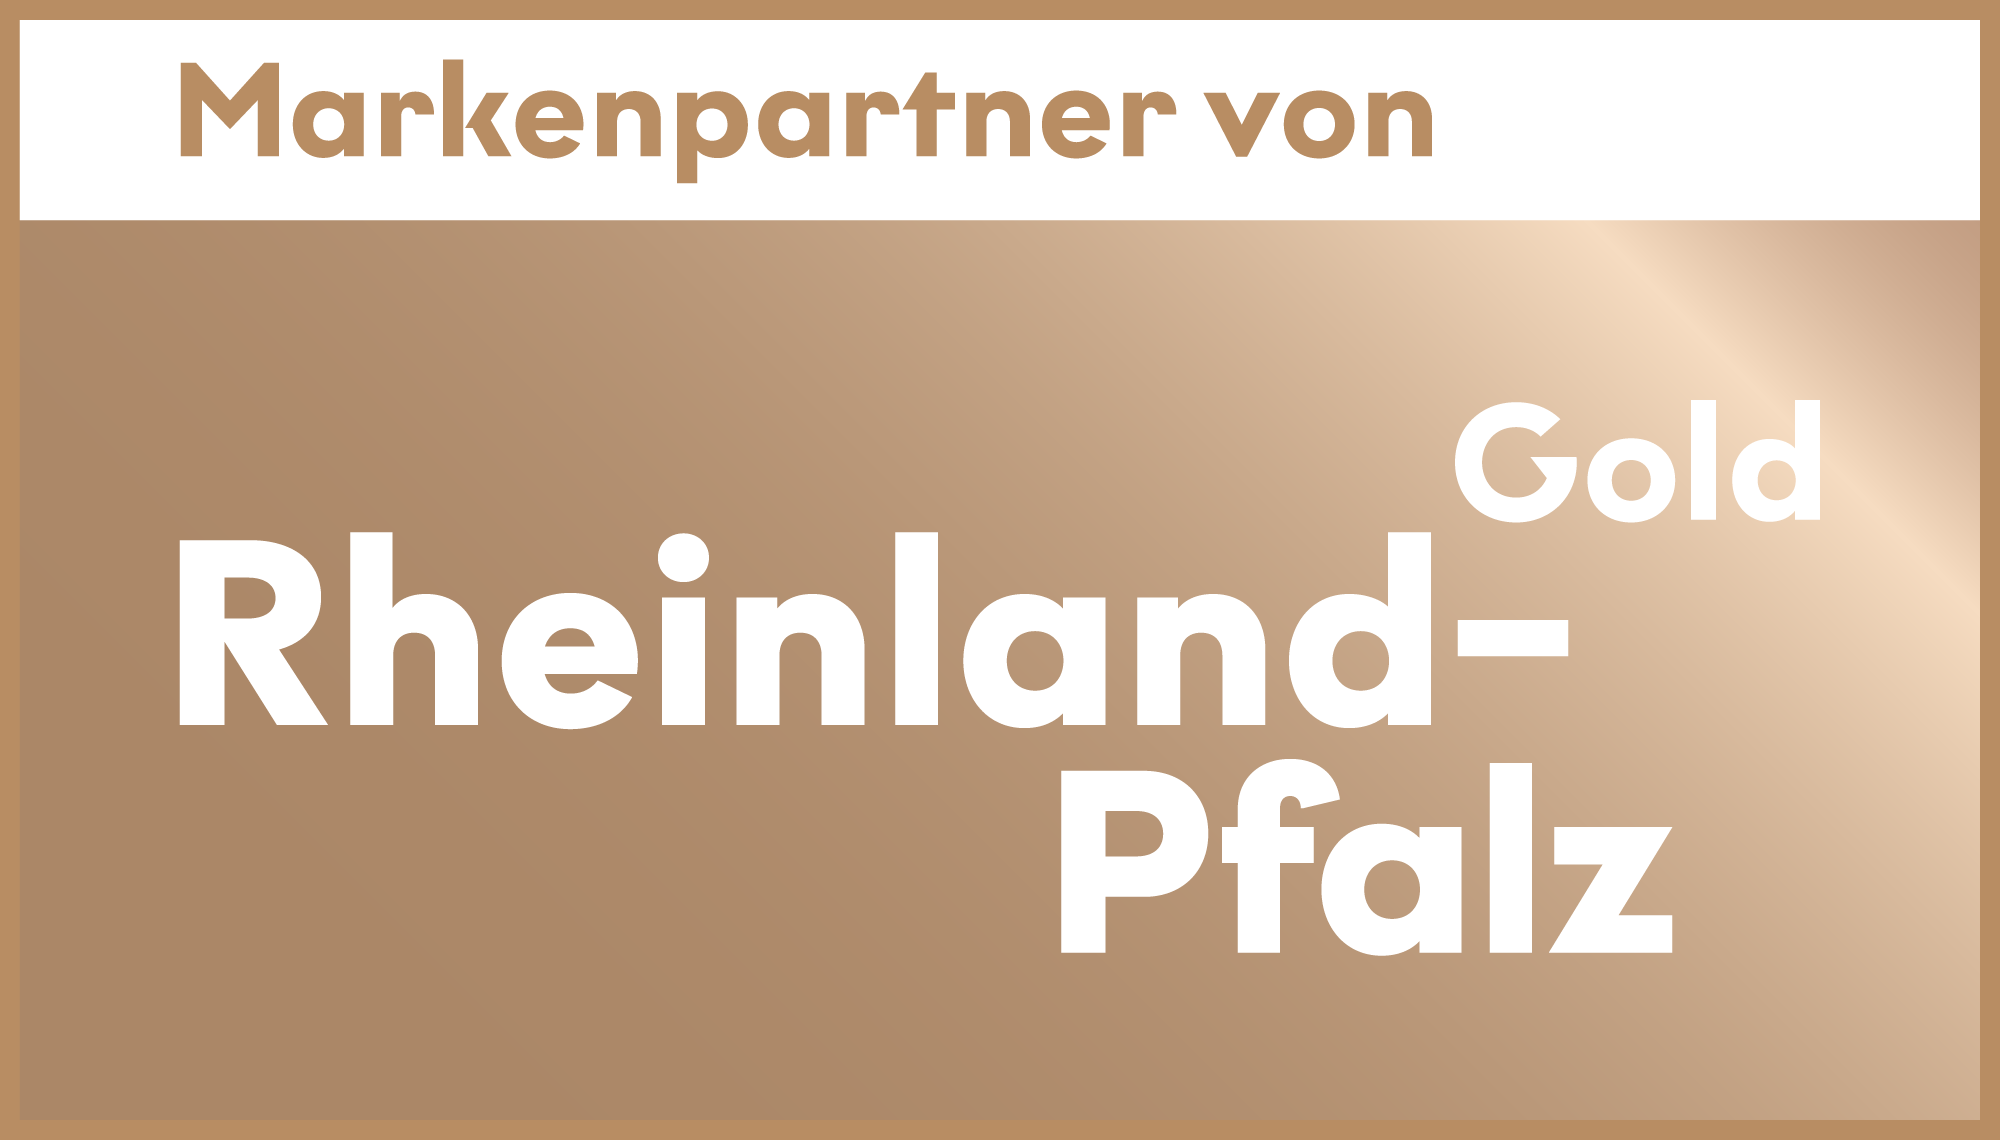 brand partner of Rhineland-Palatina Gold